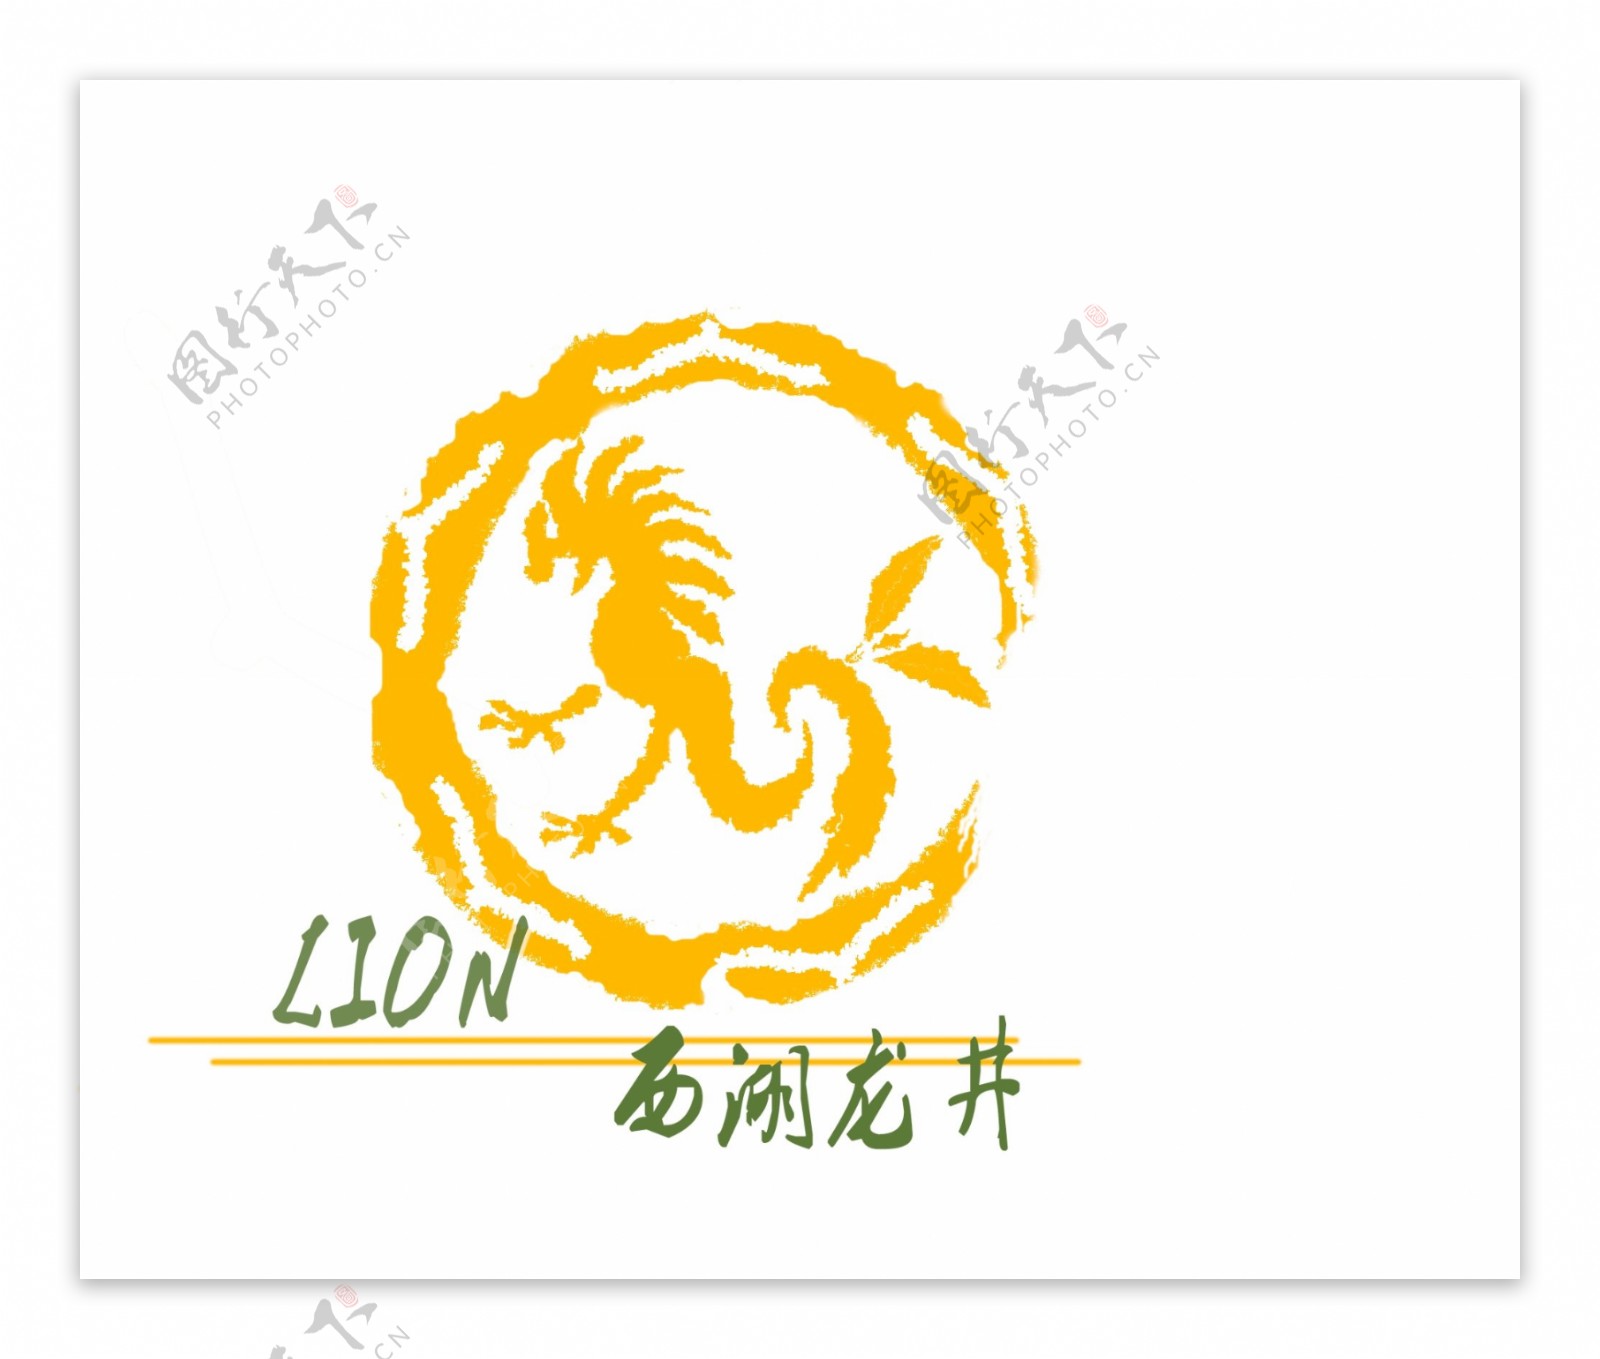 西湖龙井logo图片